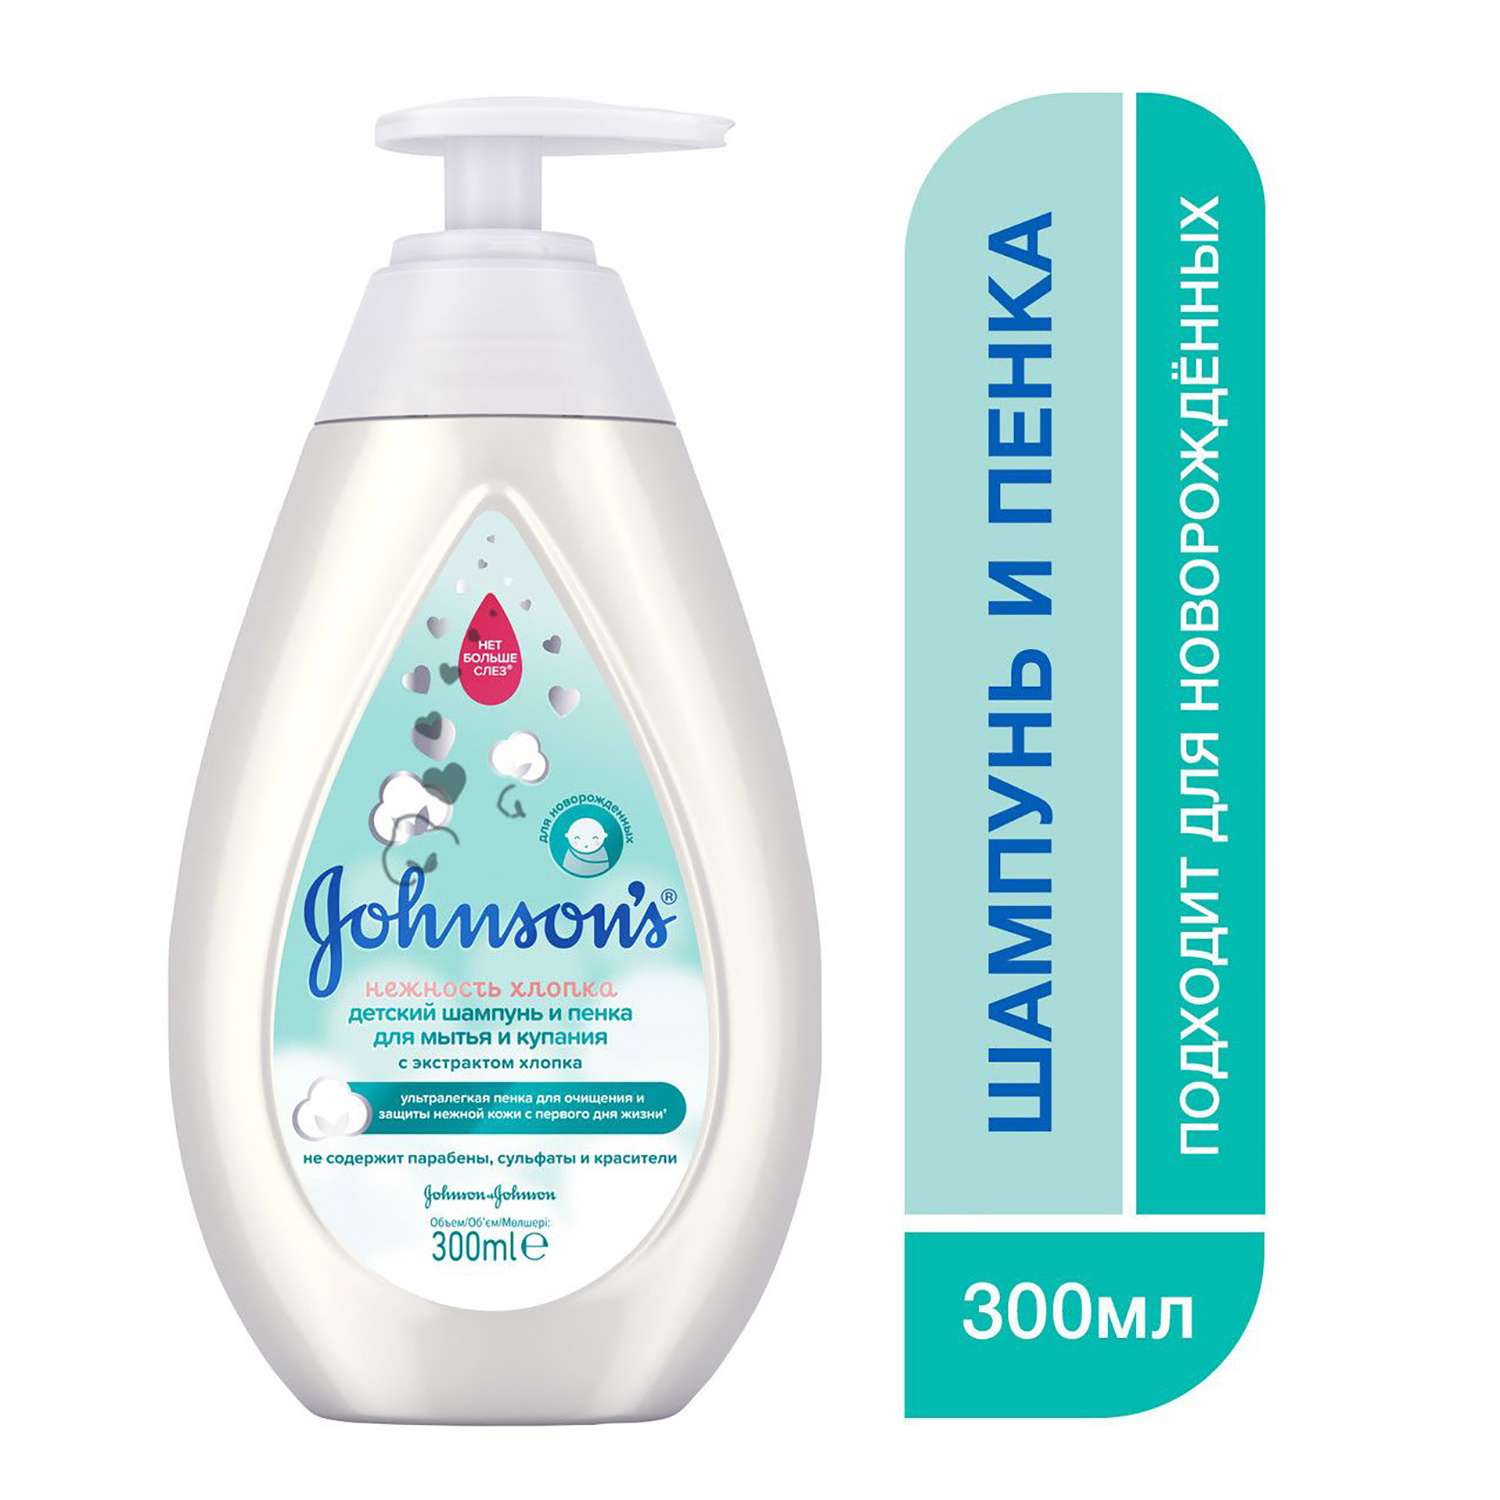 Шампунь-пенка для мытья и купания Johnson's Нежность хлопка детский 300мл - фото 2